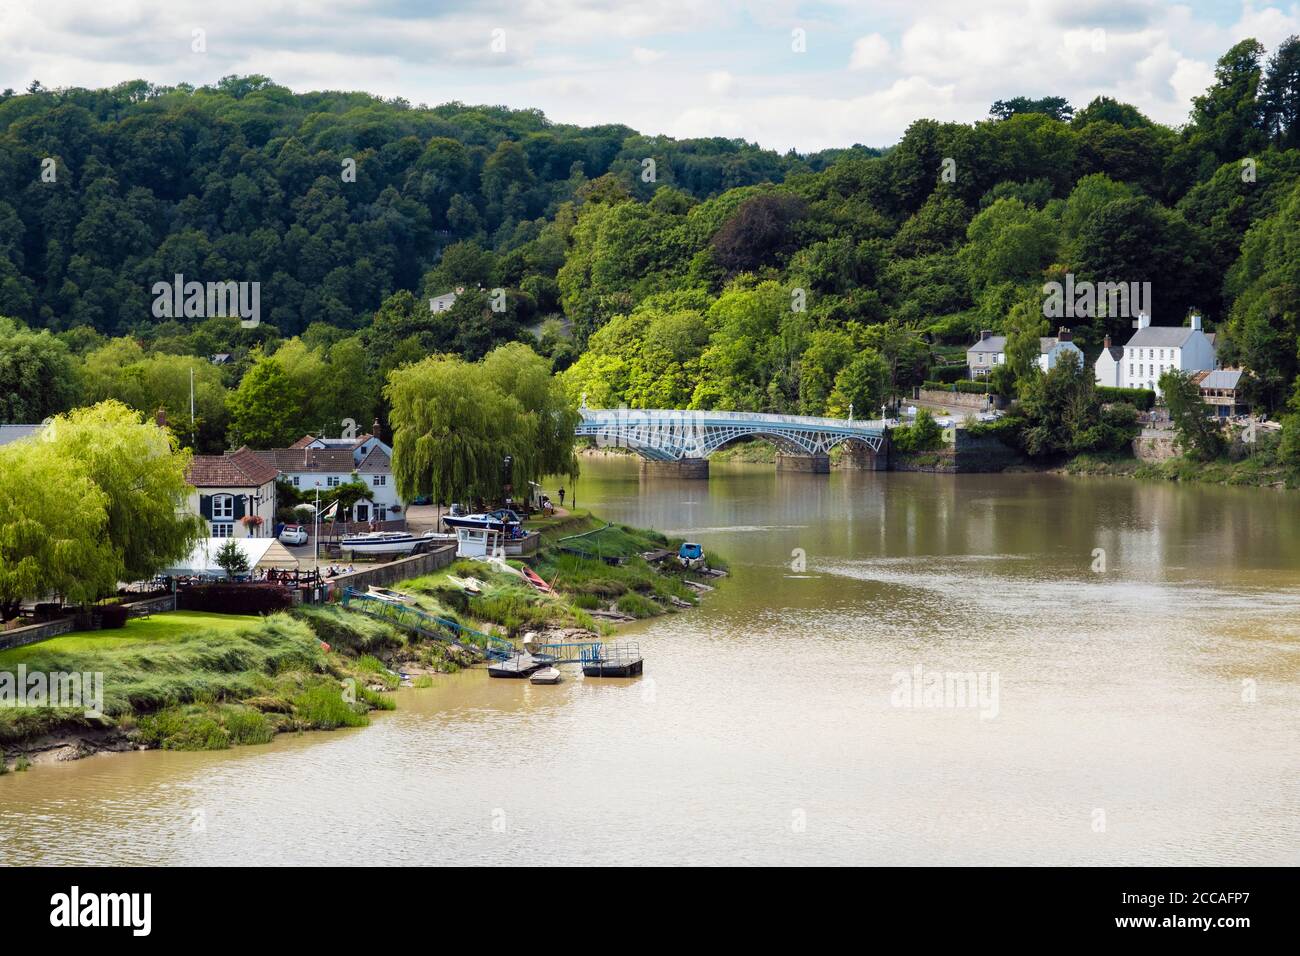 Vista lungo il fiume Wye fino al Riverside Park e all'Old Wye Bridge al confine tra le nazioni inglese e gallese. Chepstow, Monmouthshire, Galles, Regno Unito, Gran Bretagna Foto Stock